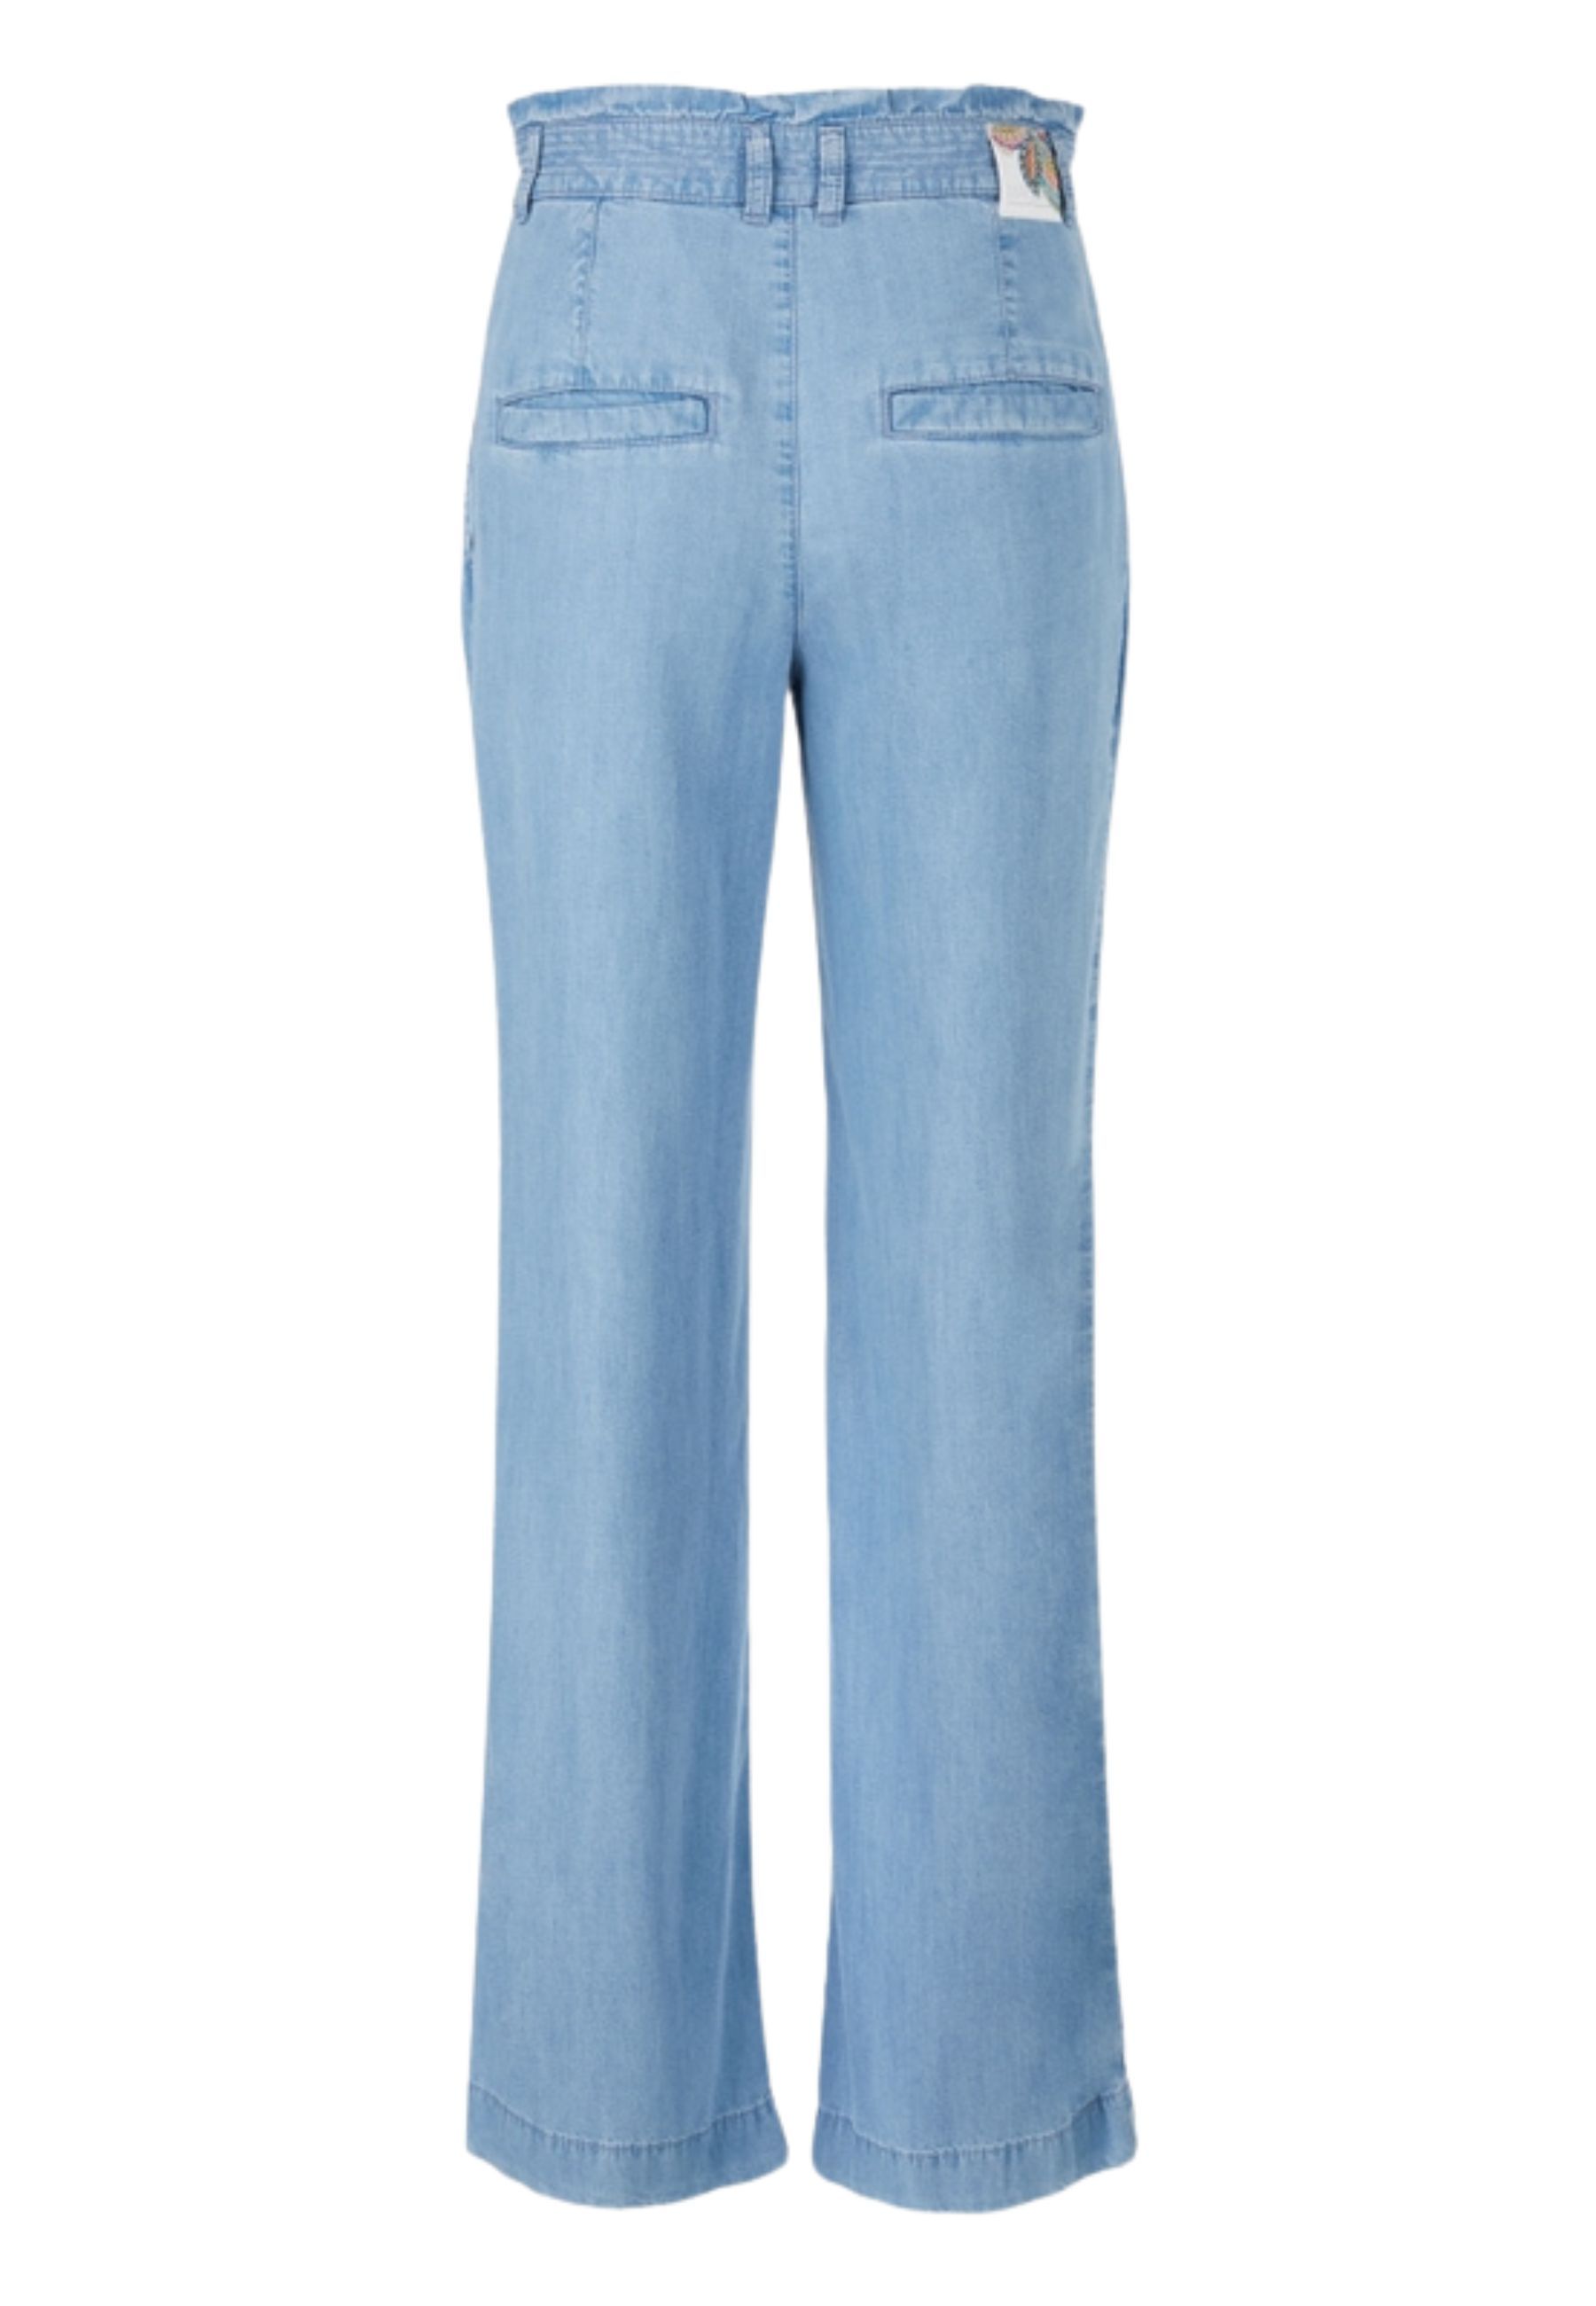 Jeans Blauw Wc 82.16 D63